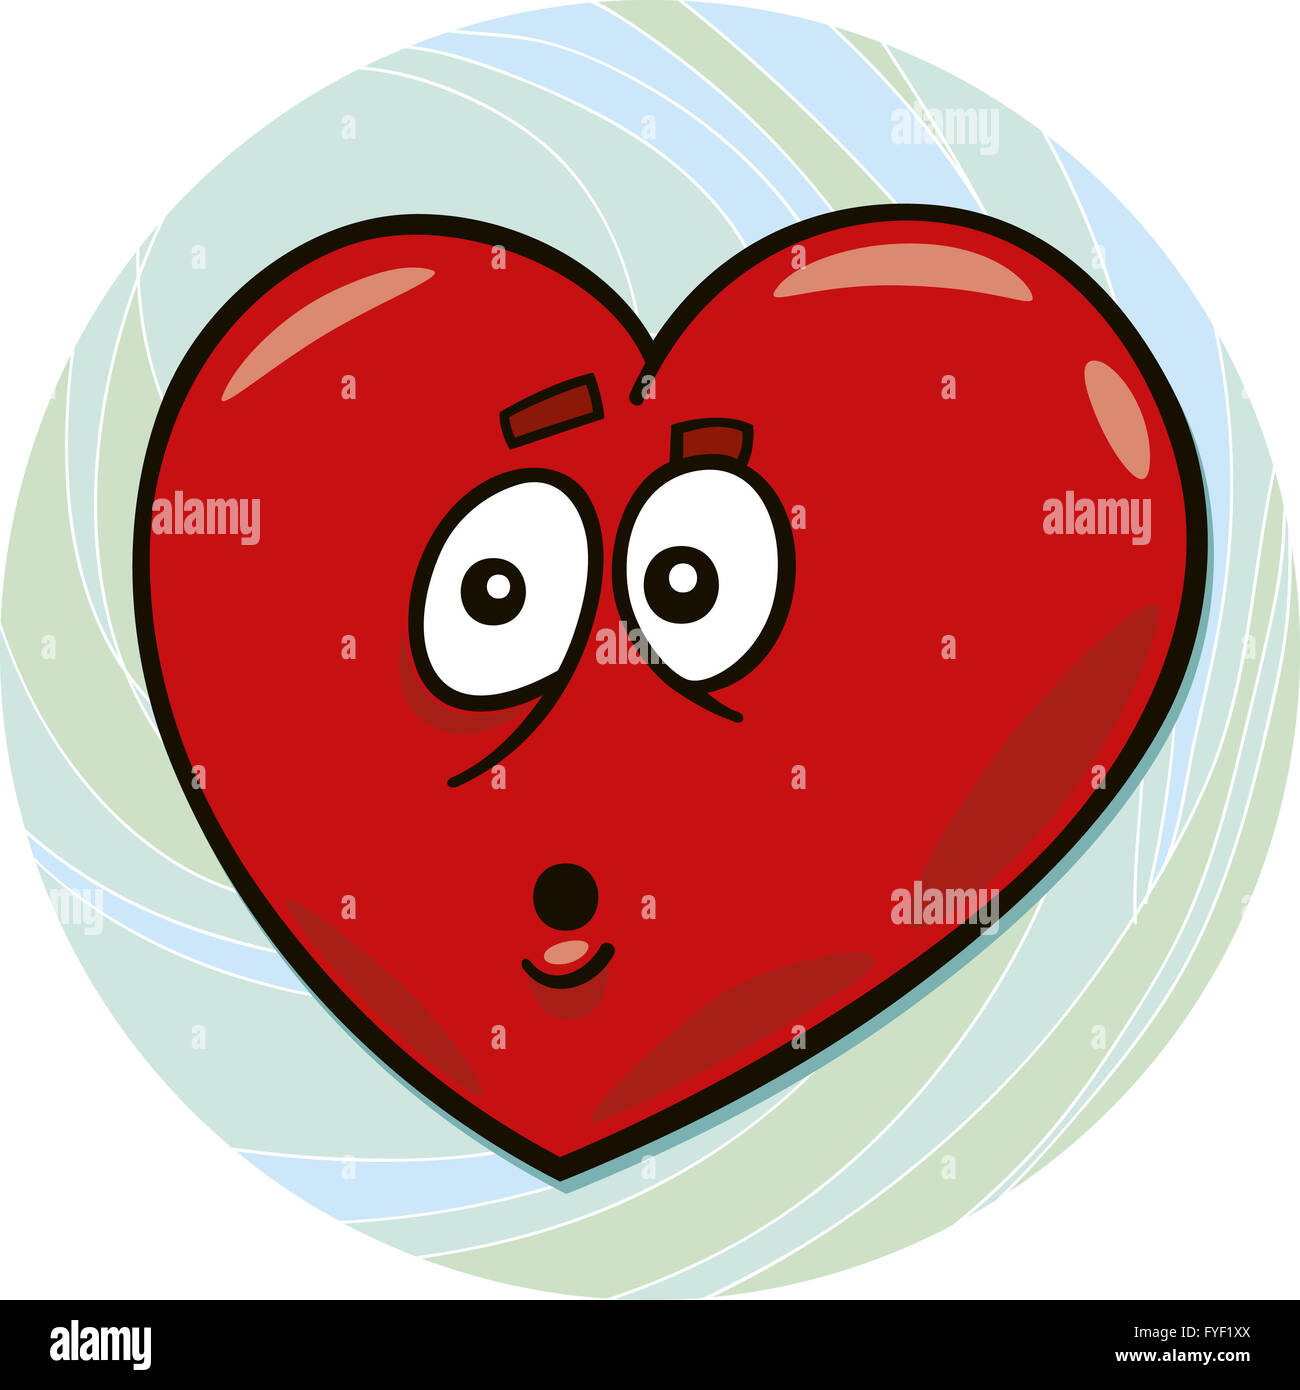 startled heart Stock Photo